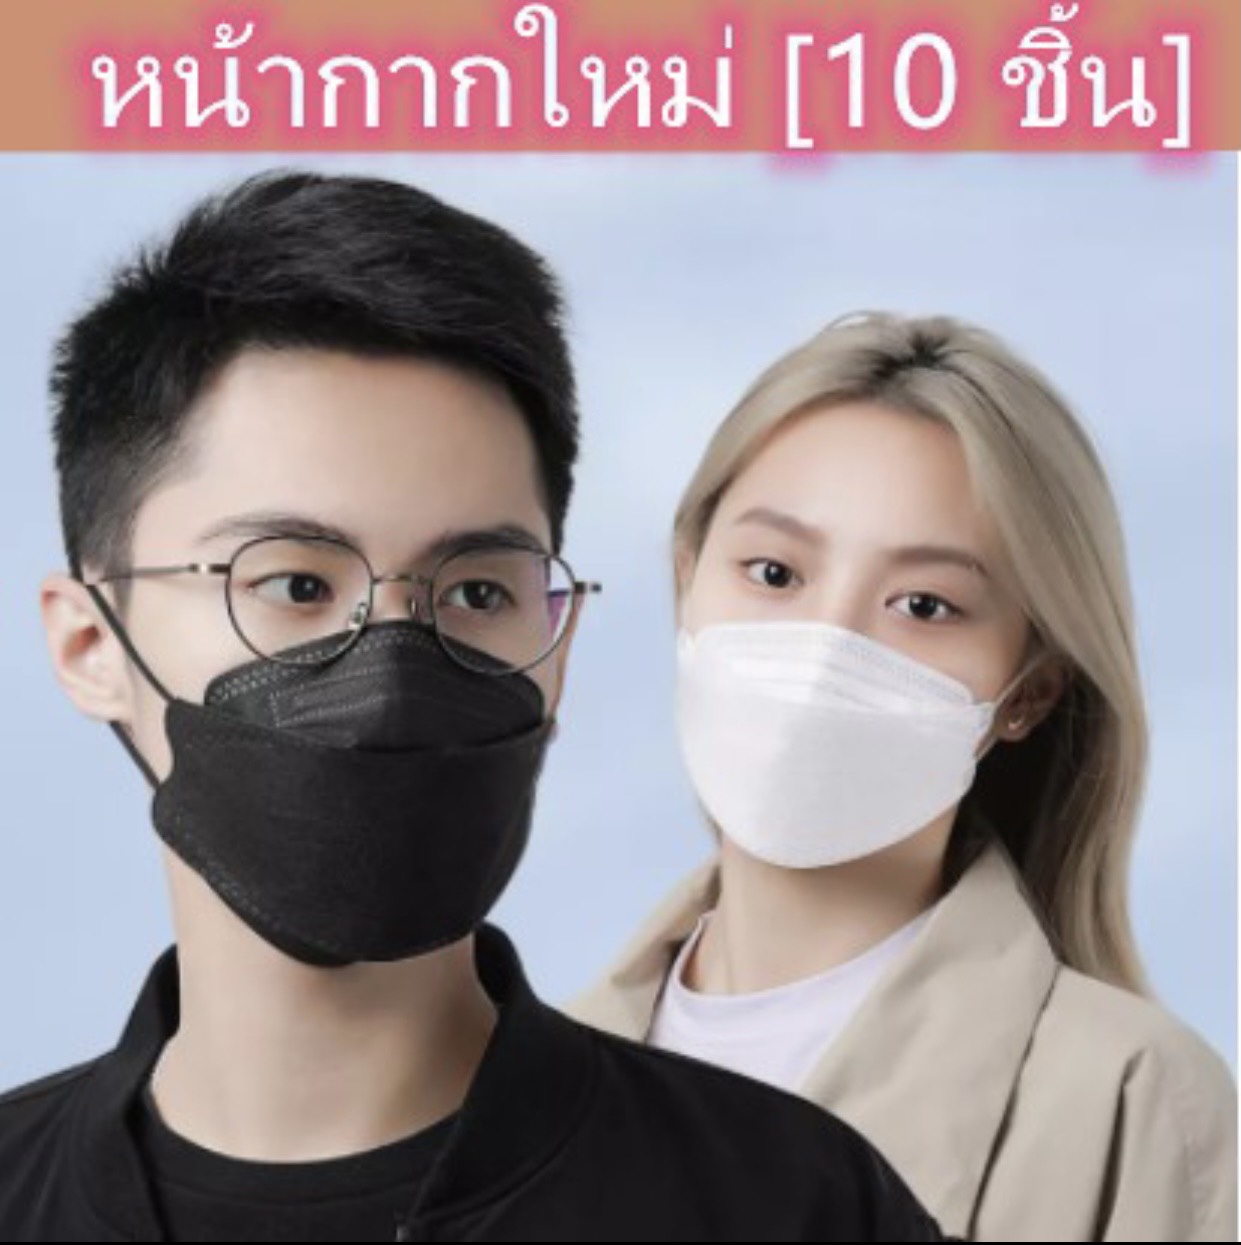 (ฮิตที่สุด)? KF94 หน้ากากอนามัยเกาหลี? แมสเกาหลี งานคุณภาพ ป้องกันไวรัส pm2.5 พร้อมส่งจากไทย #ผู้ชายผู้หญิงใส่ได้